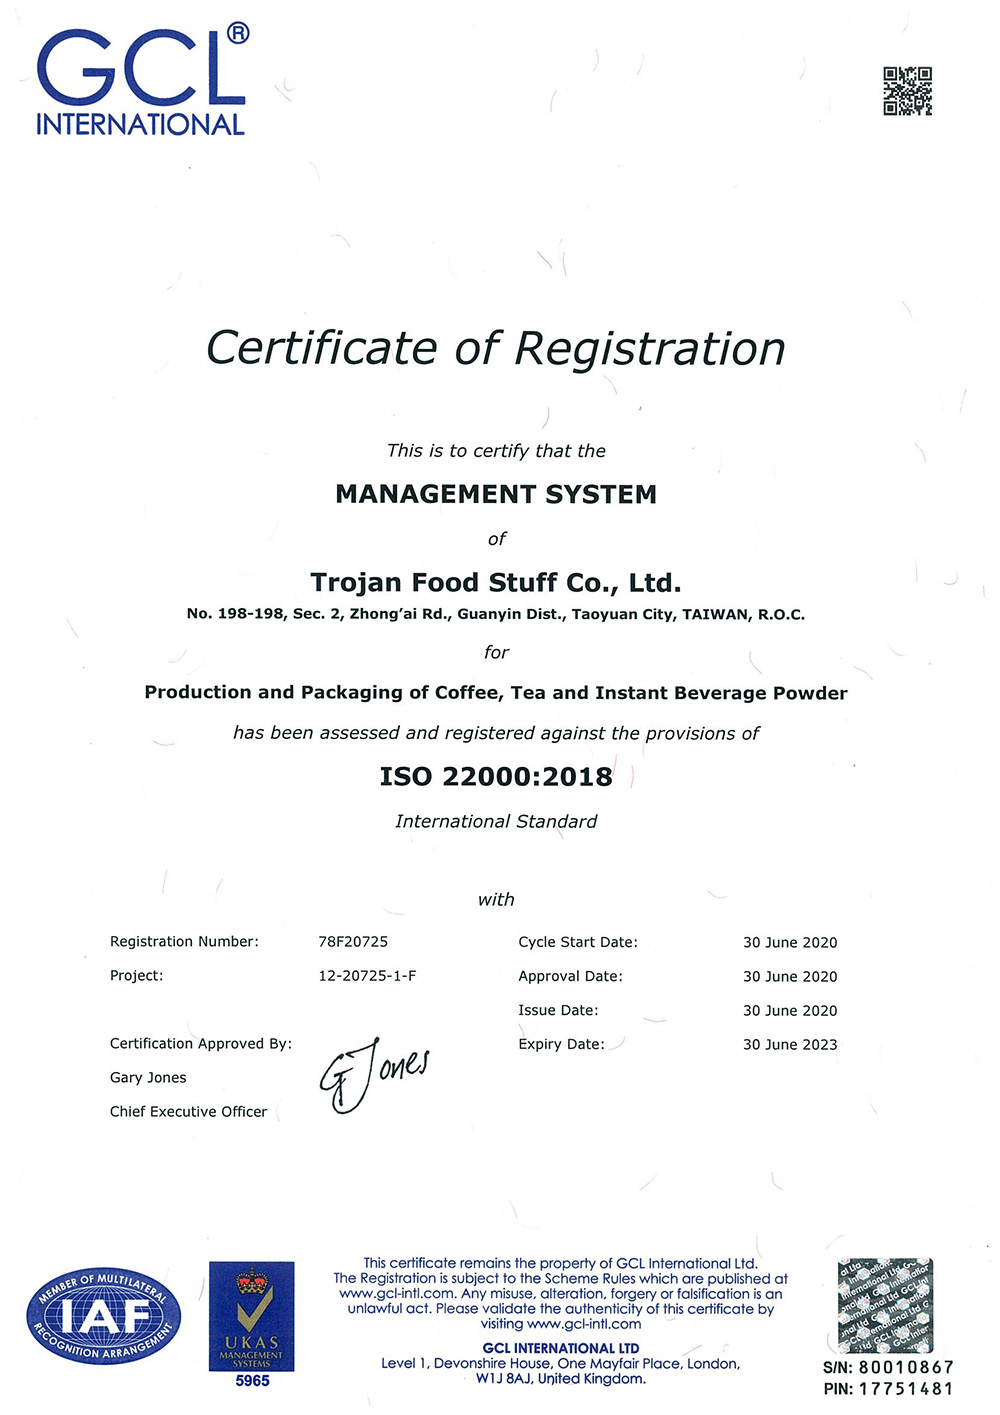 Trojan은 2019년에 ISO-22000 인증을 획득했습니다.